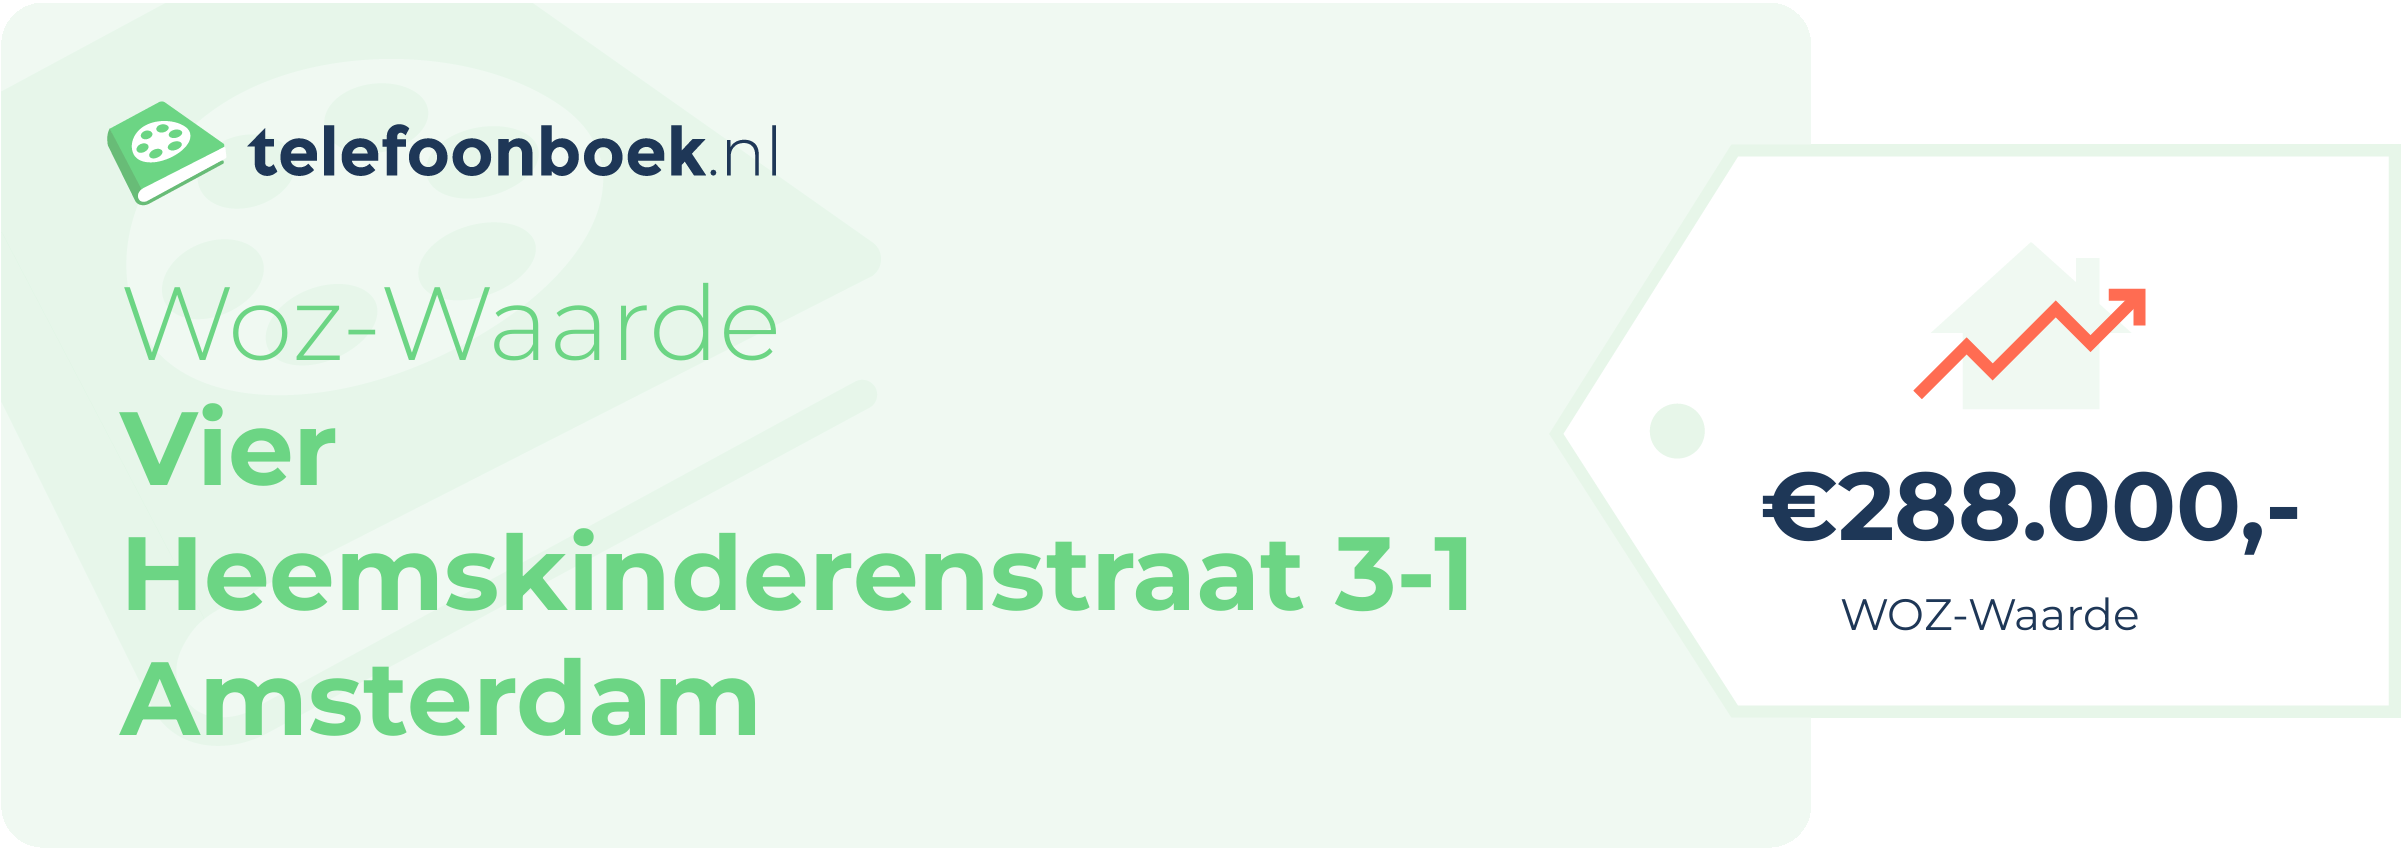 WOZ-waarde Vier Heemskinderenstraat 3-1 Amsterdam